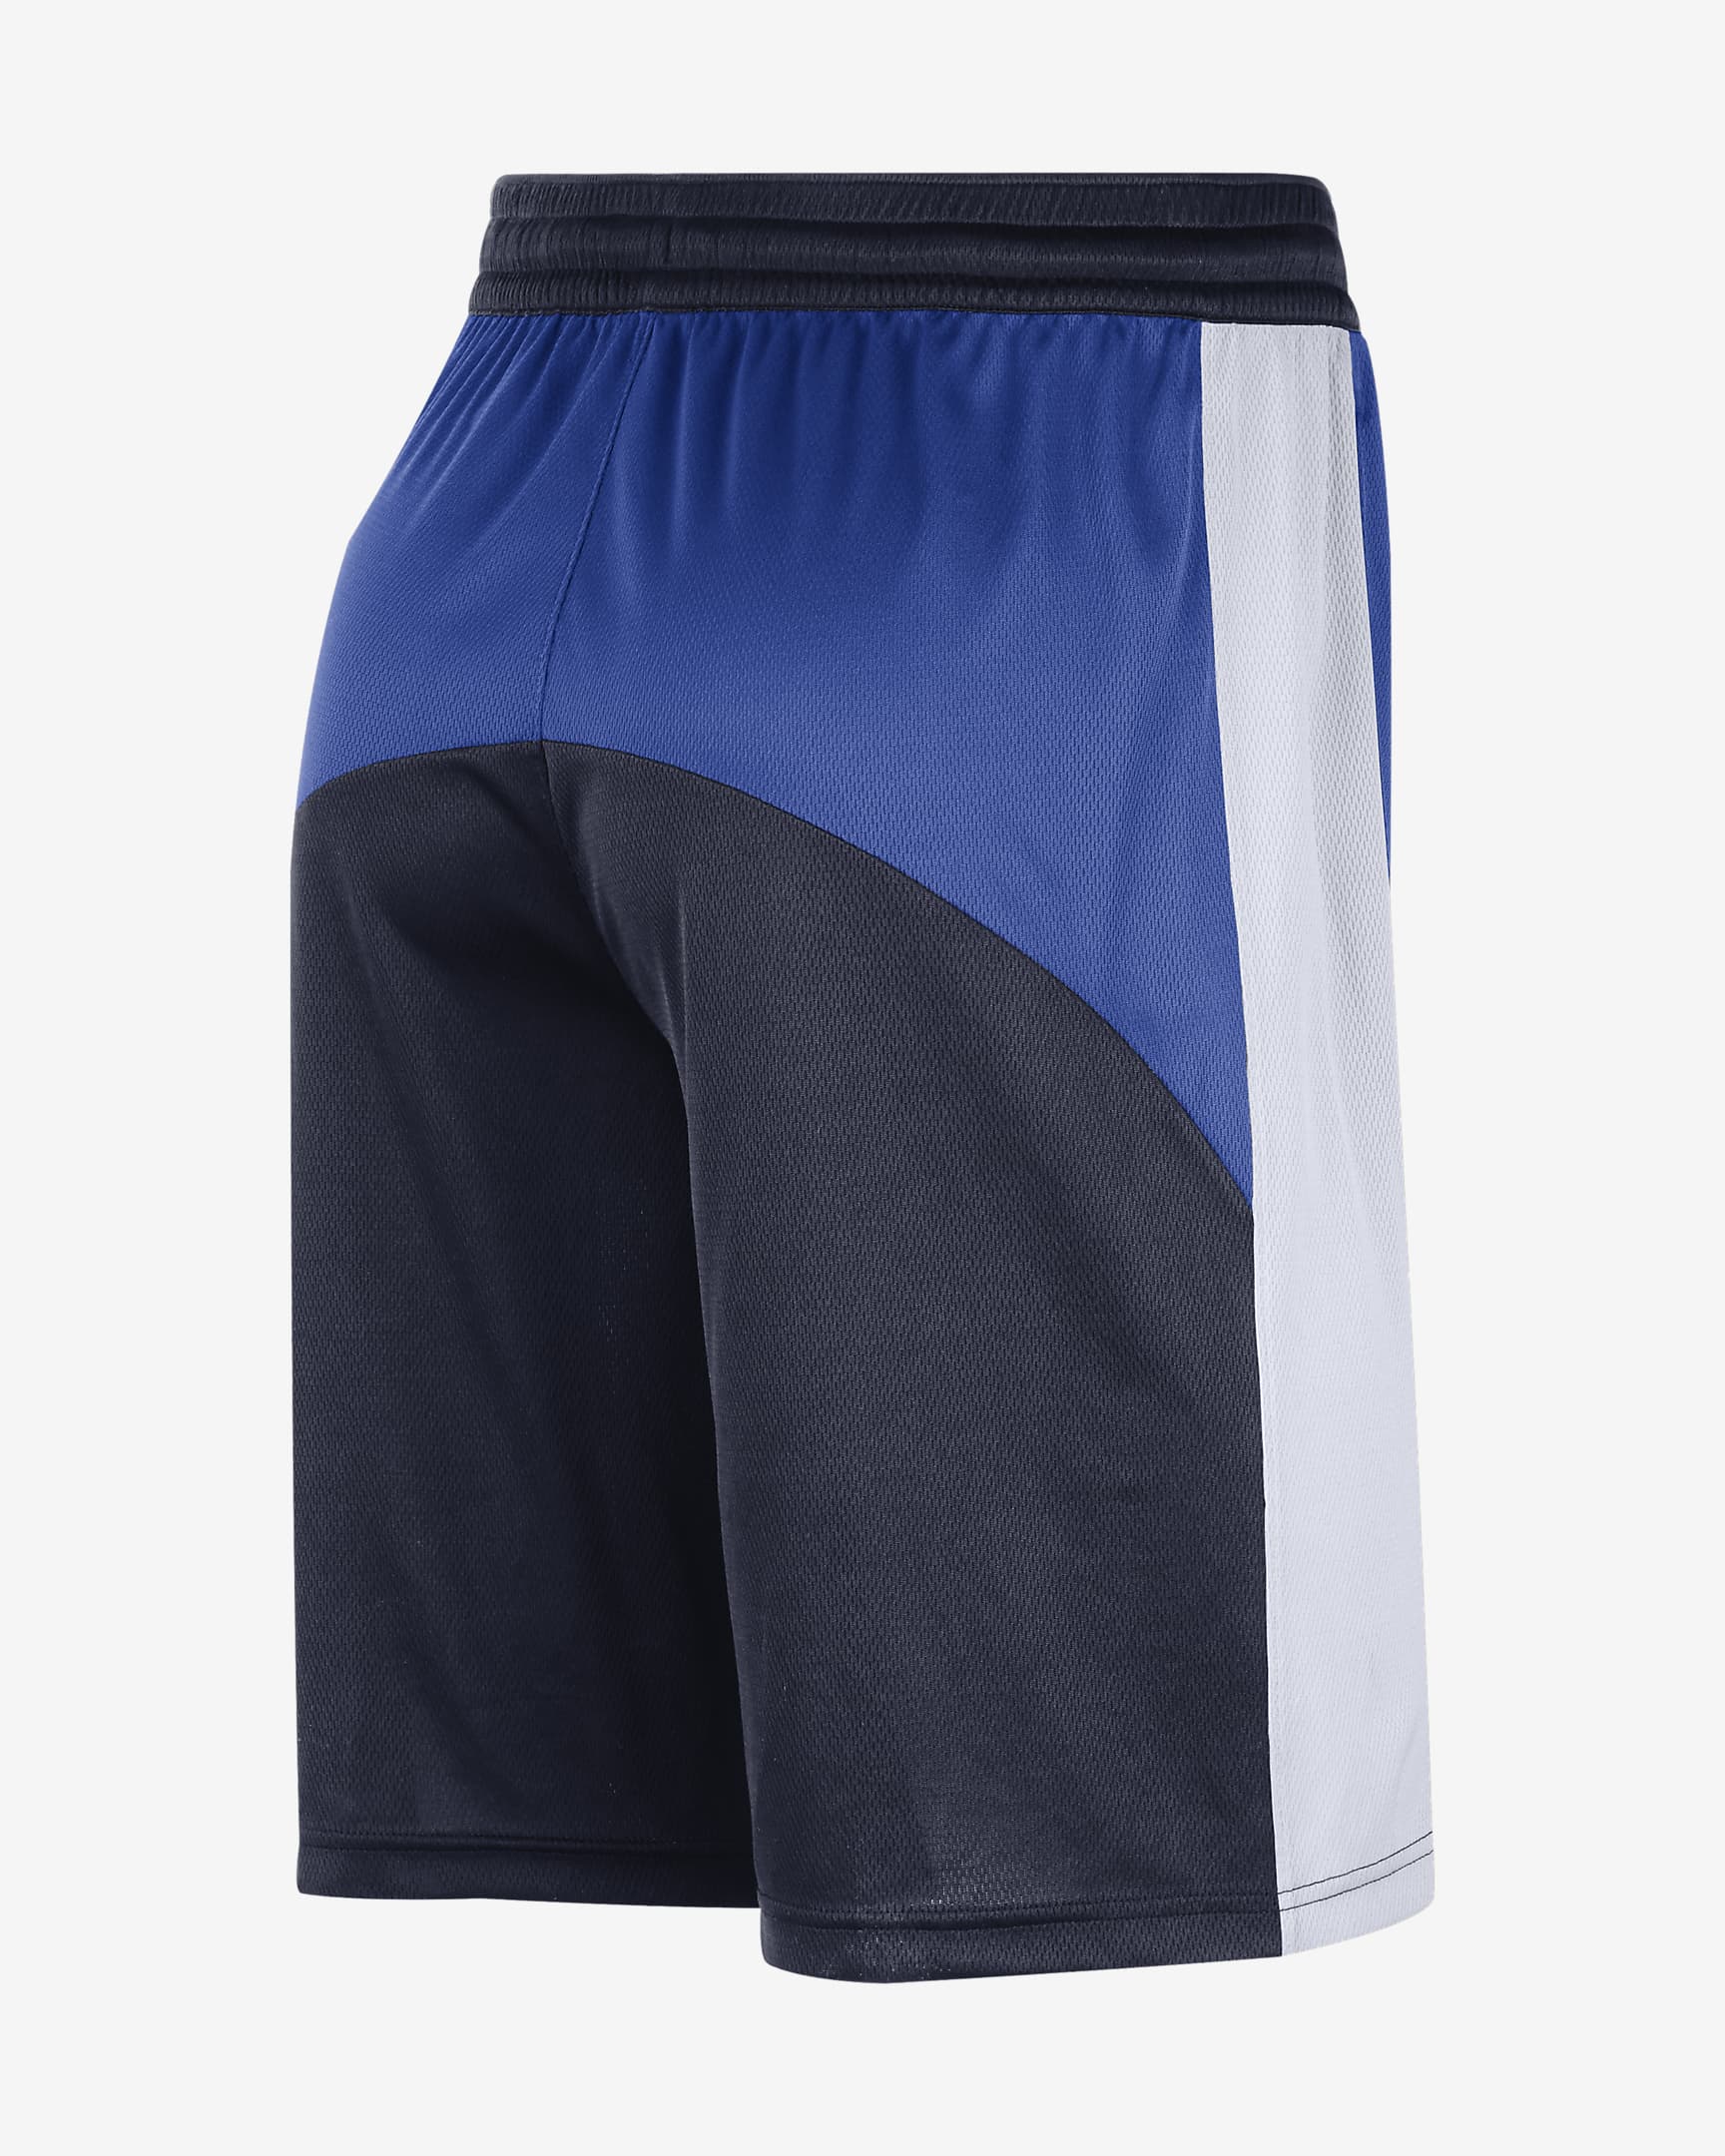 Dallas Mavericks Starting 5 Men's Nike Dri-FIT NBA Shorts. Nike.com